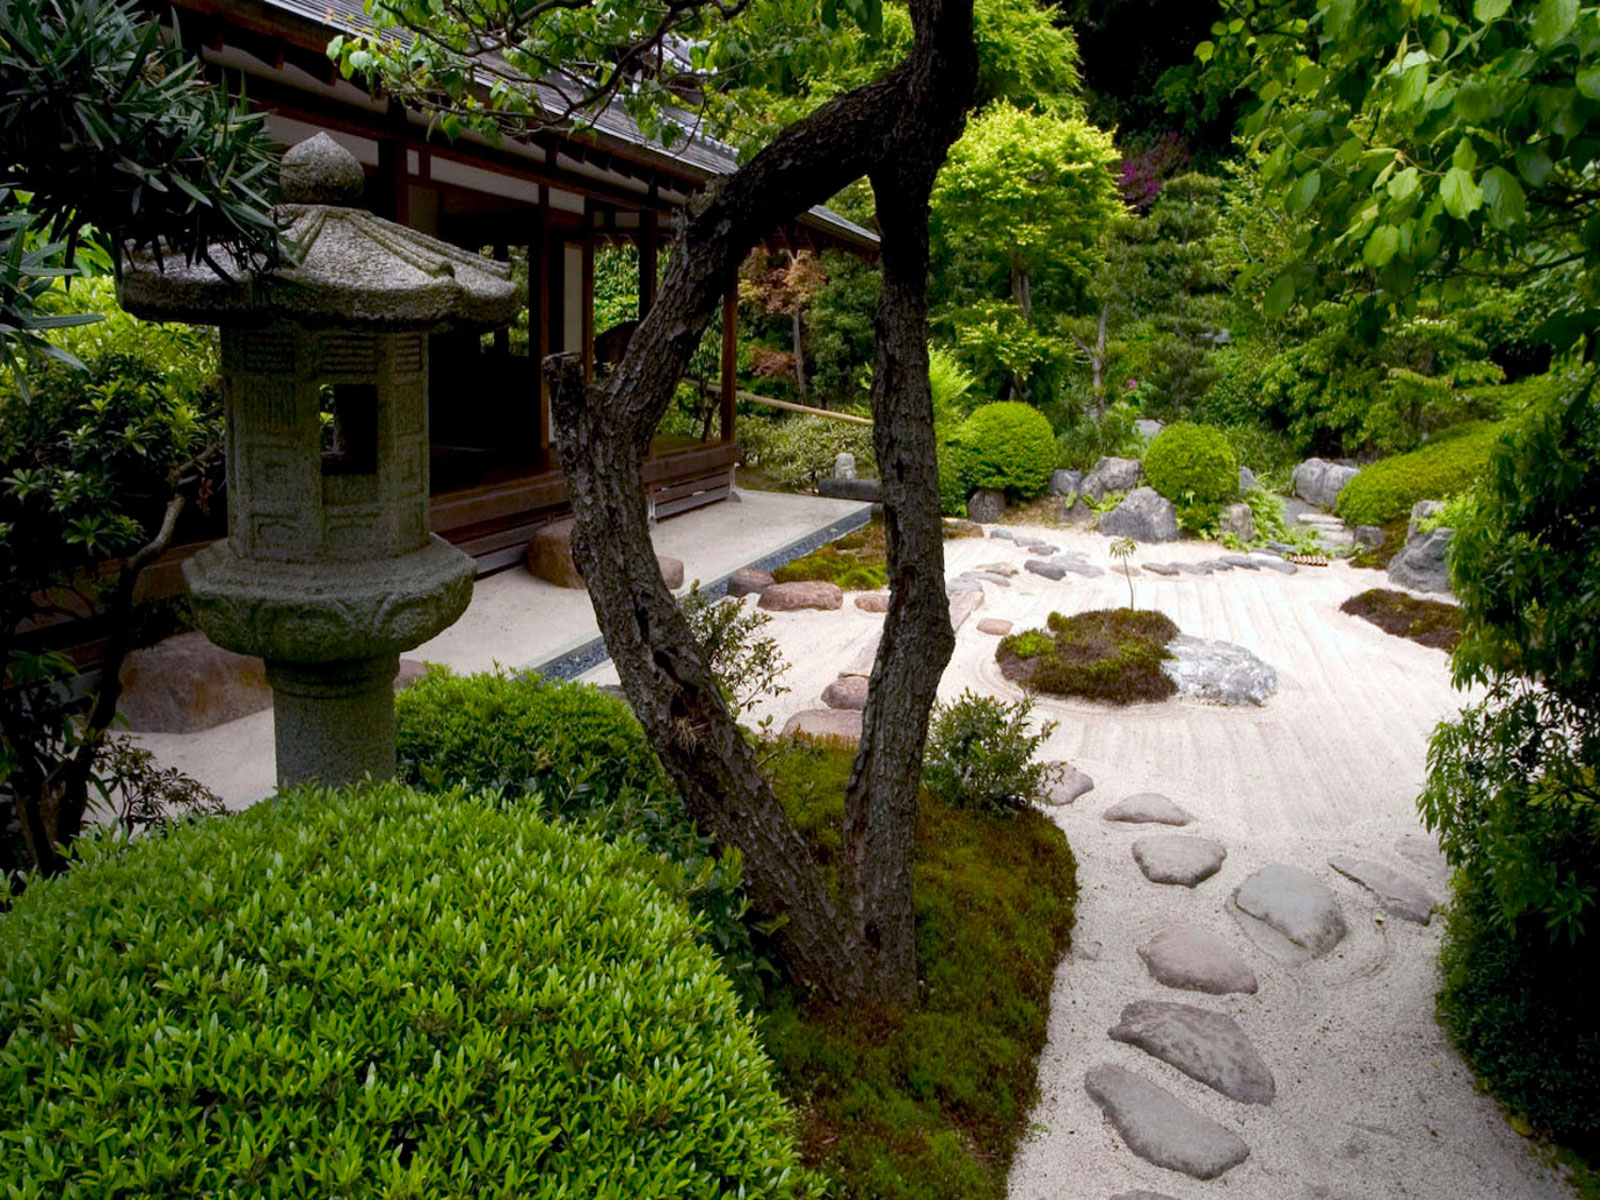 Zen Garden Wallpapers High Quality Resolution For Free - Japanese Zen Garden  Wallpaper Hd - 1600x1200 Wallpaper 